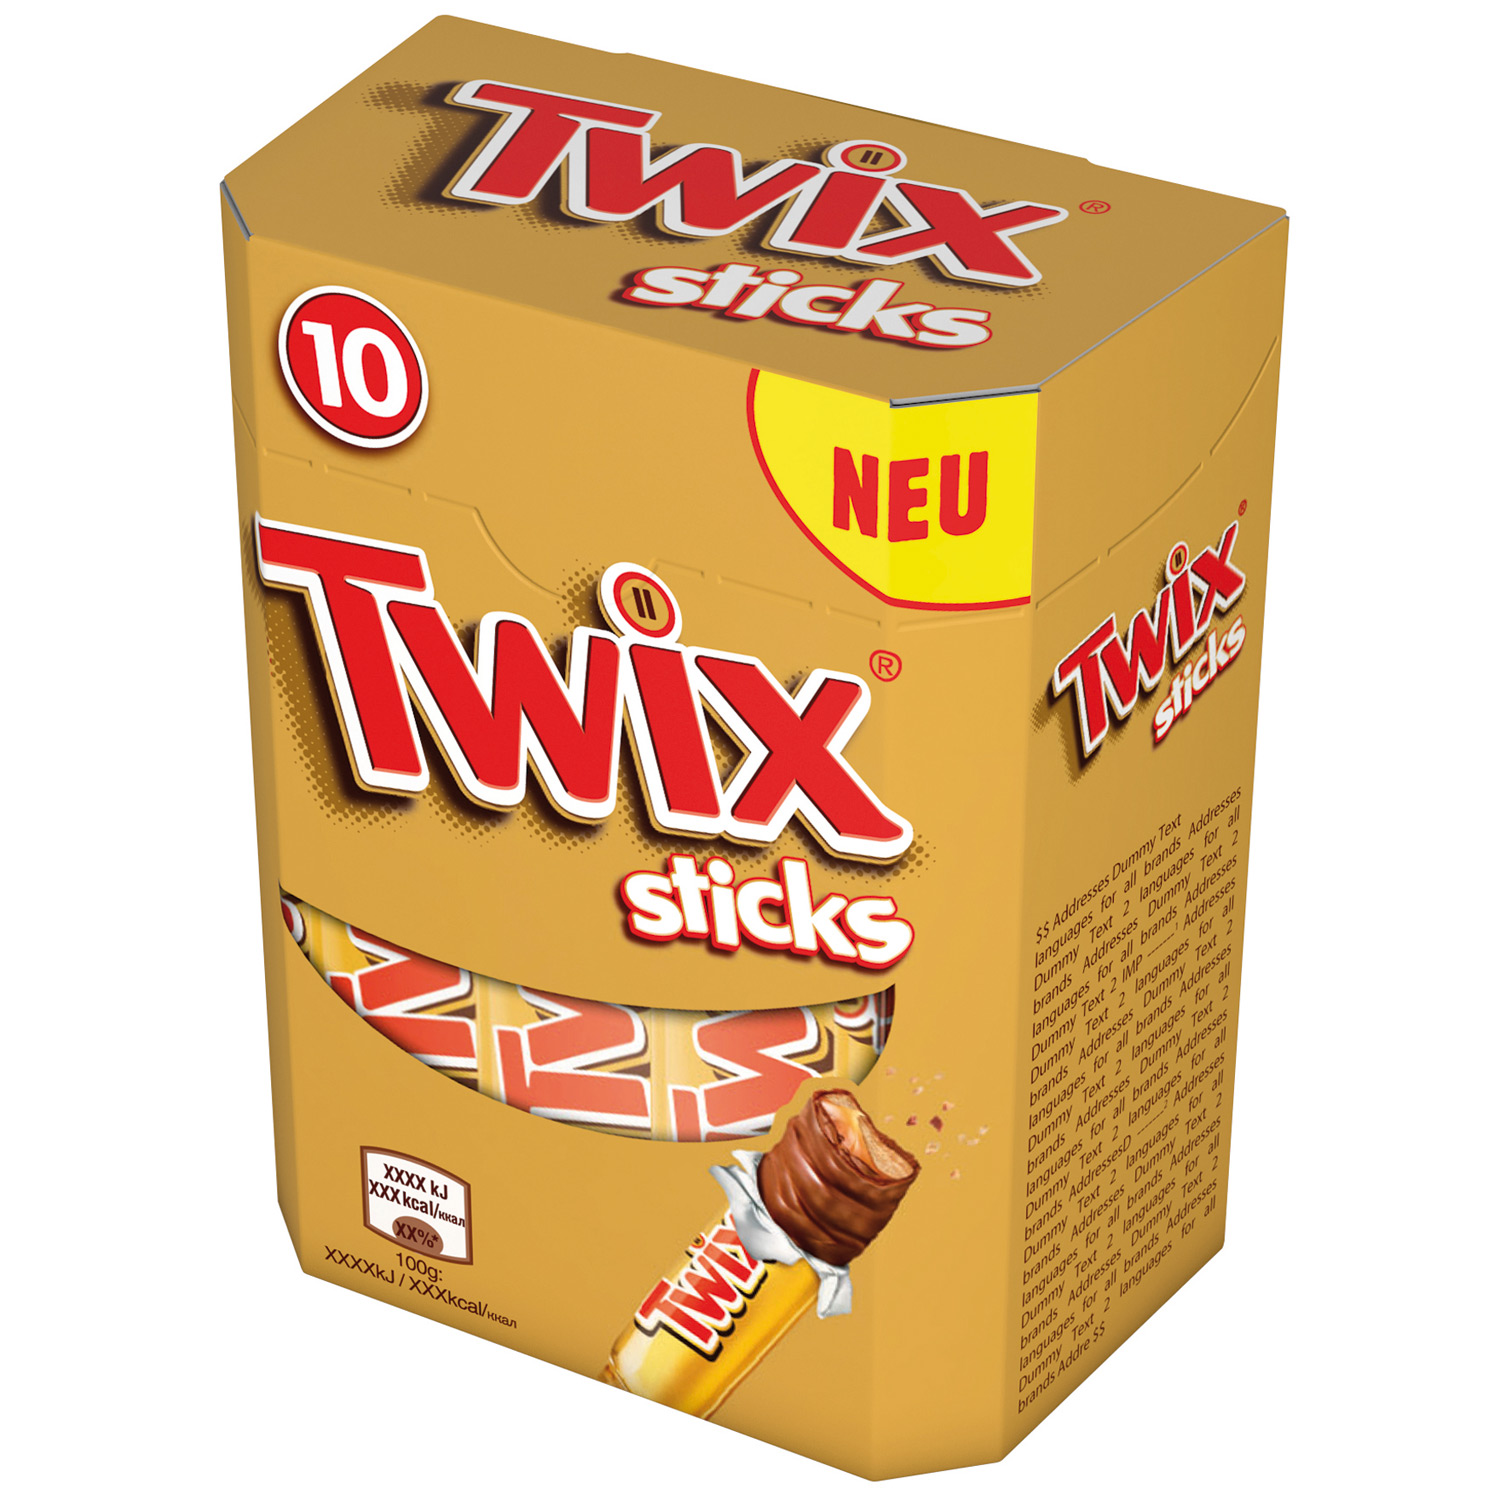 Twix Sticks